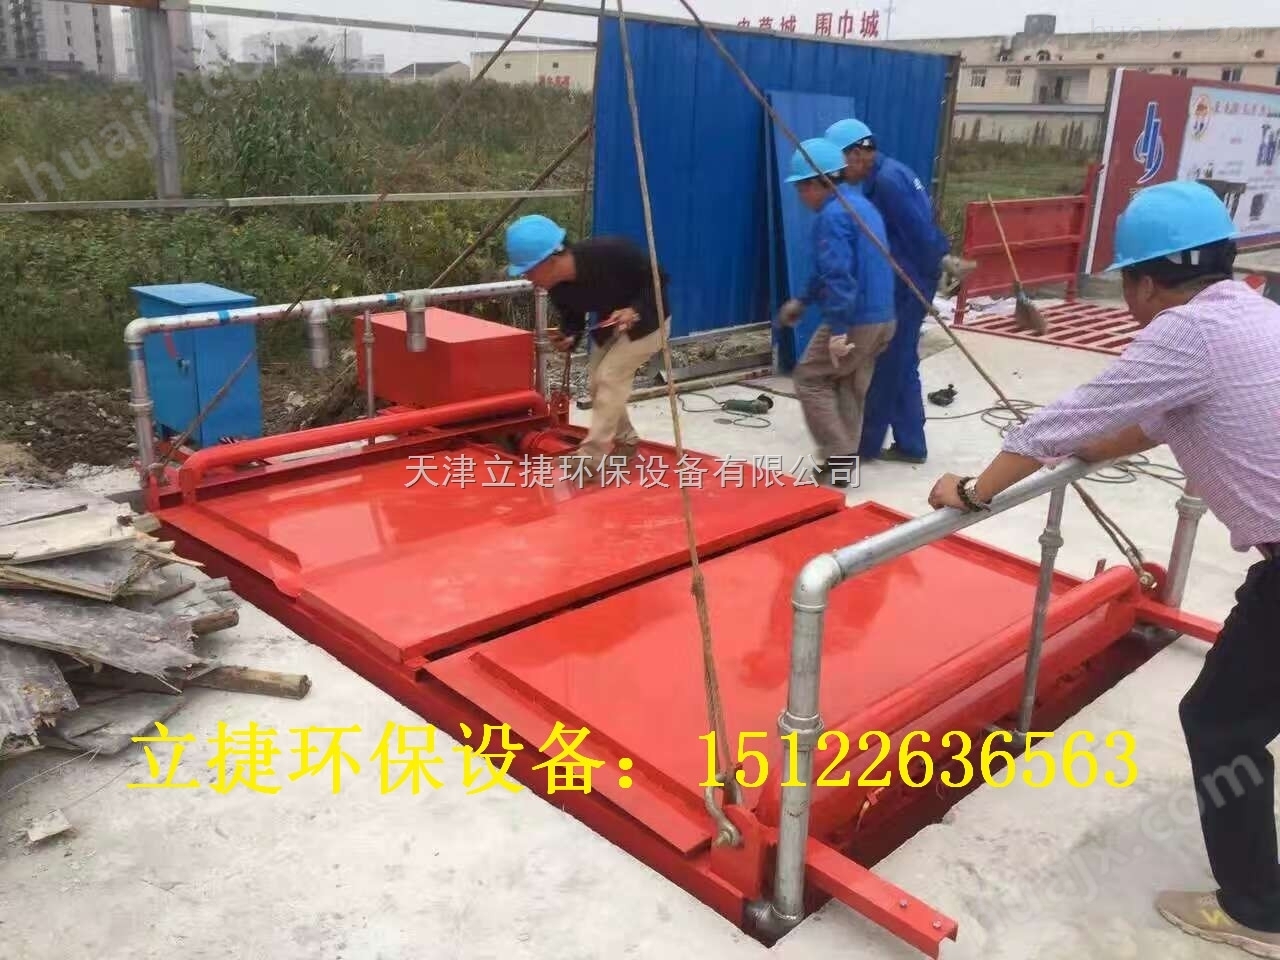 天津滨海新区滚轴式八轴洗车设备立捷jklj-110-g